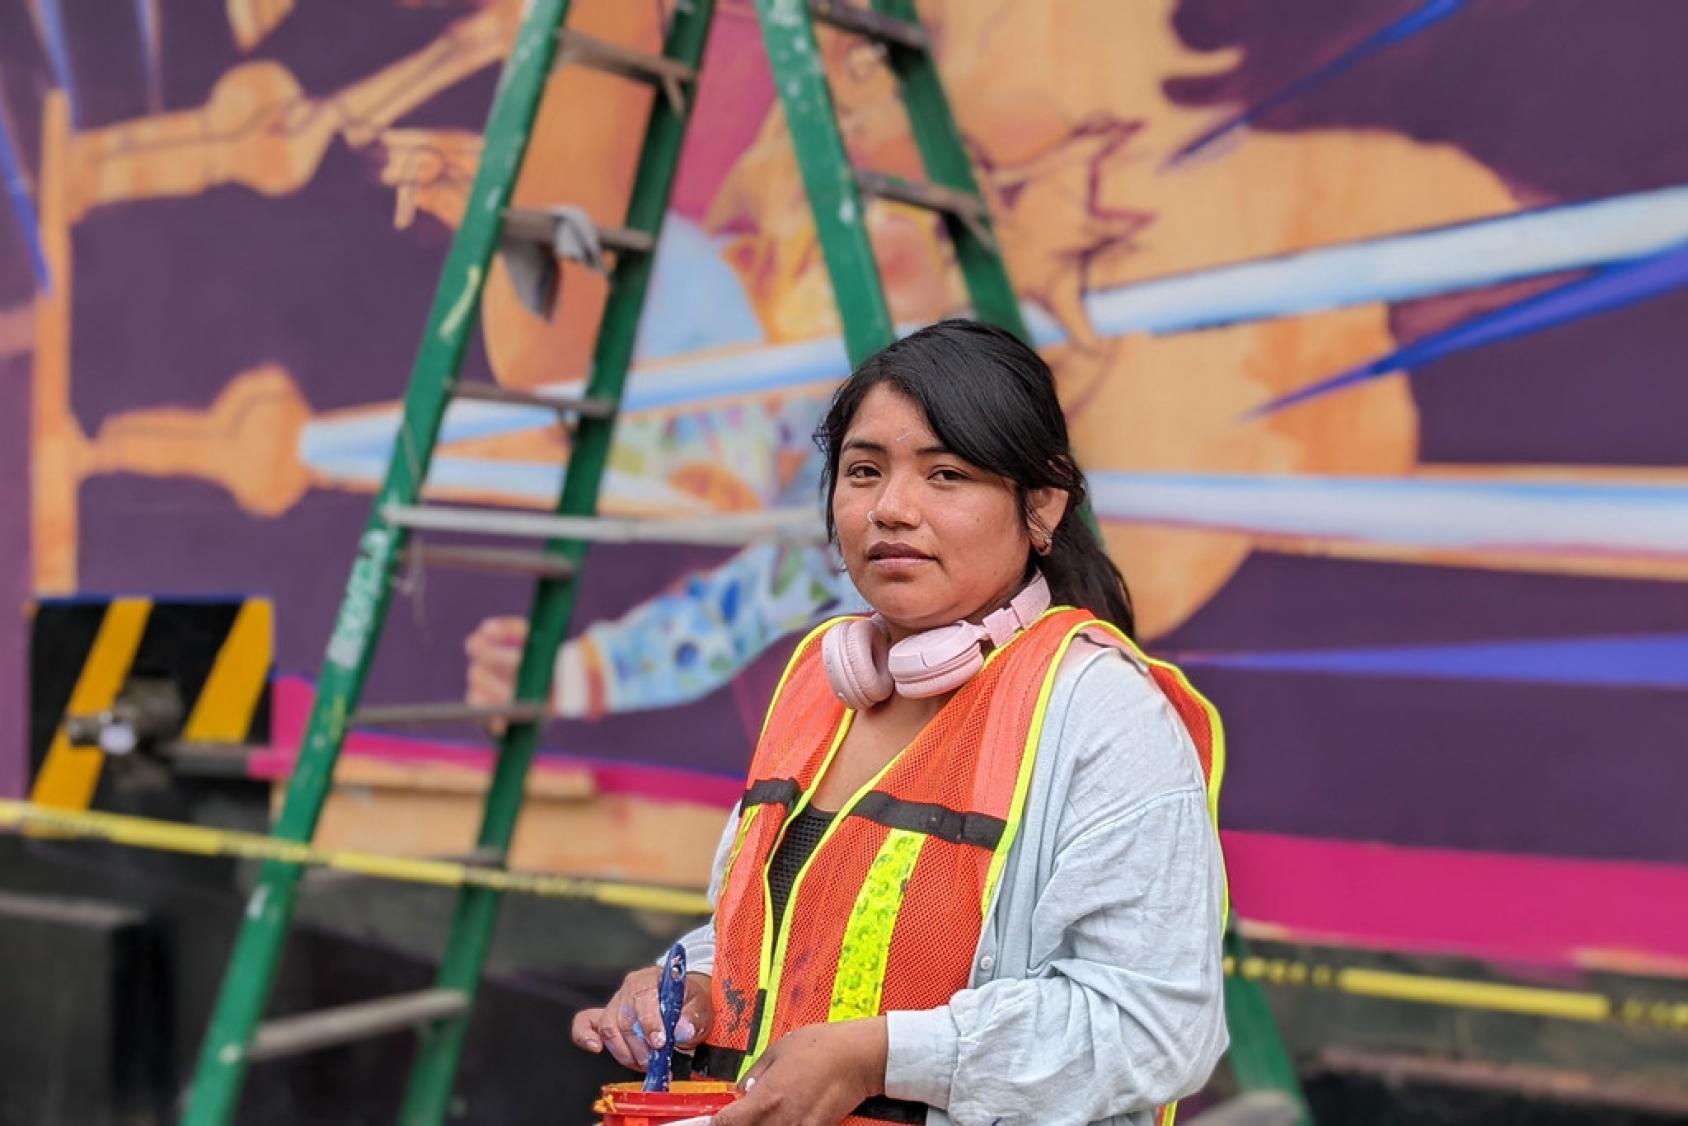 Mari Mariel, artista y muralista que pintó el Mural "La lucha no solo es en el ring", situado en la fachada principal de la Arena México, en Ciudad de México.